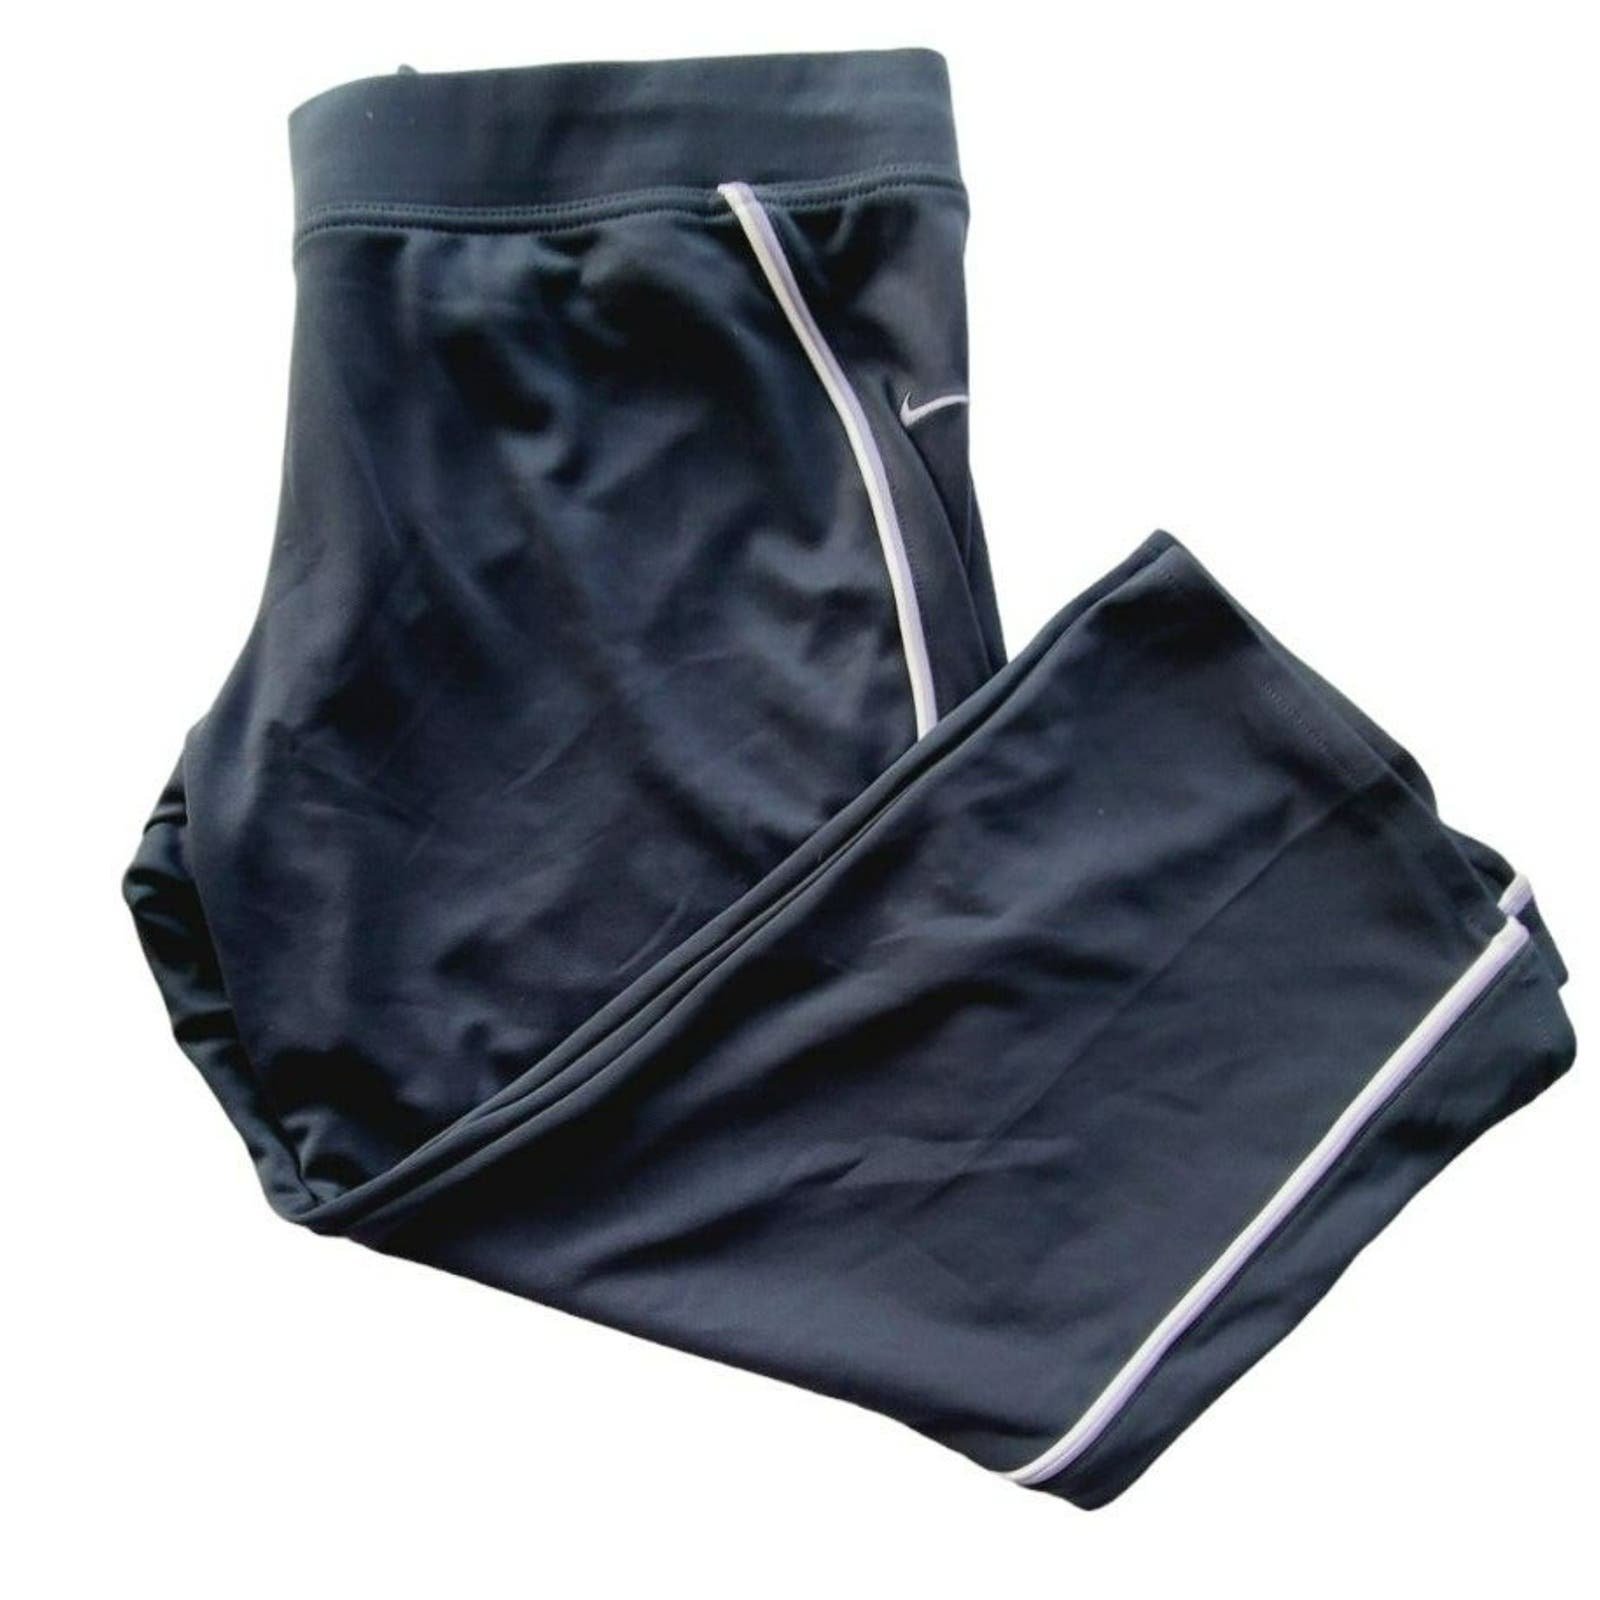 Classic Nike Capri Pants Size L KLwjkWAJ7 Outlet Store